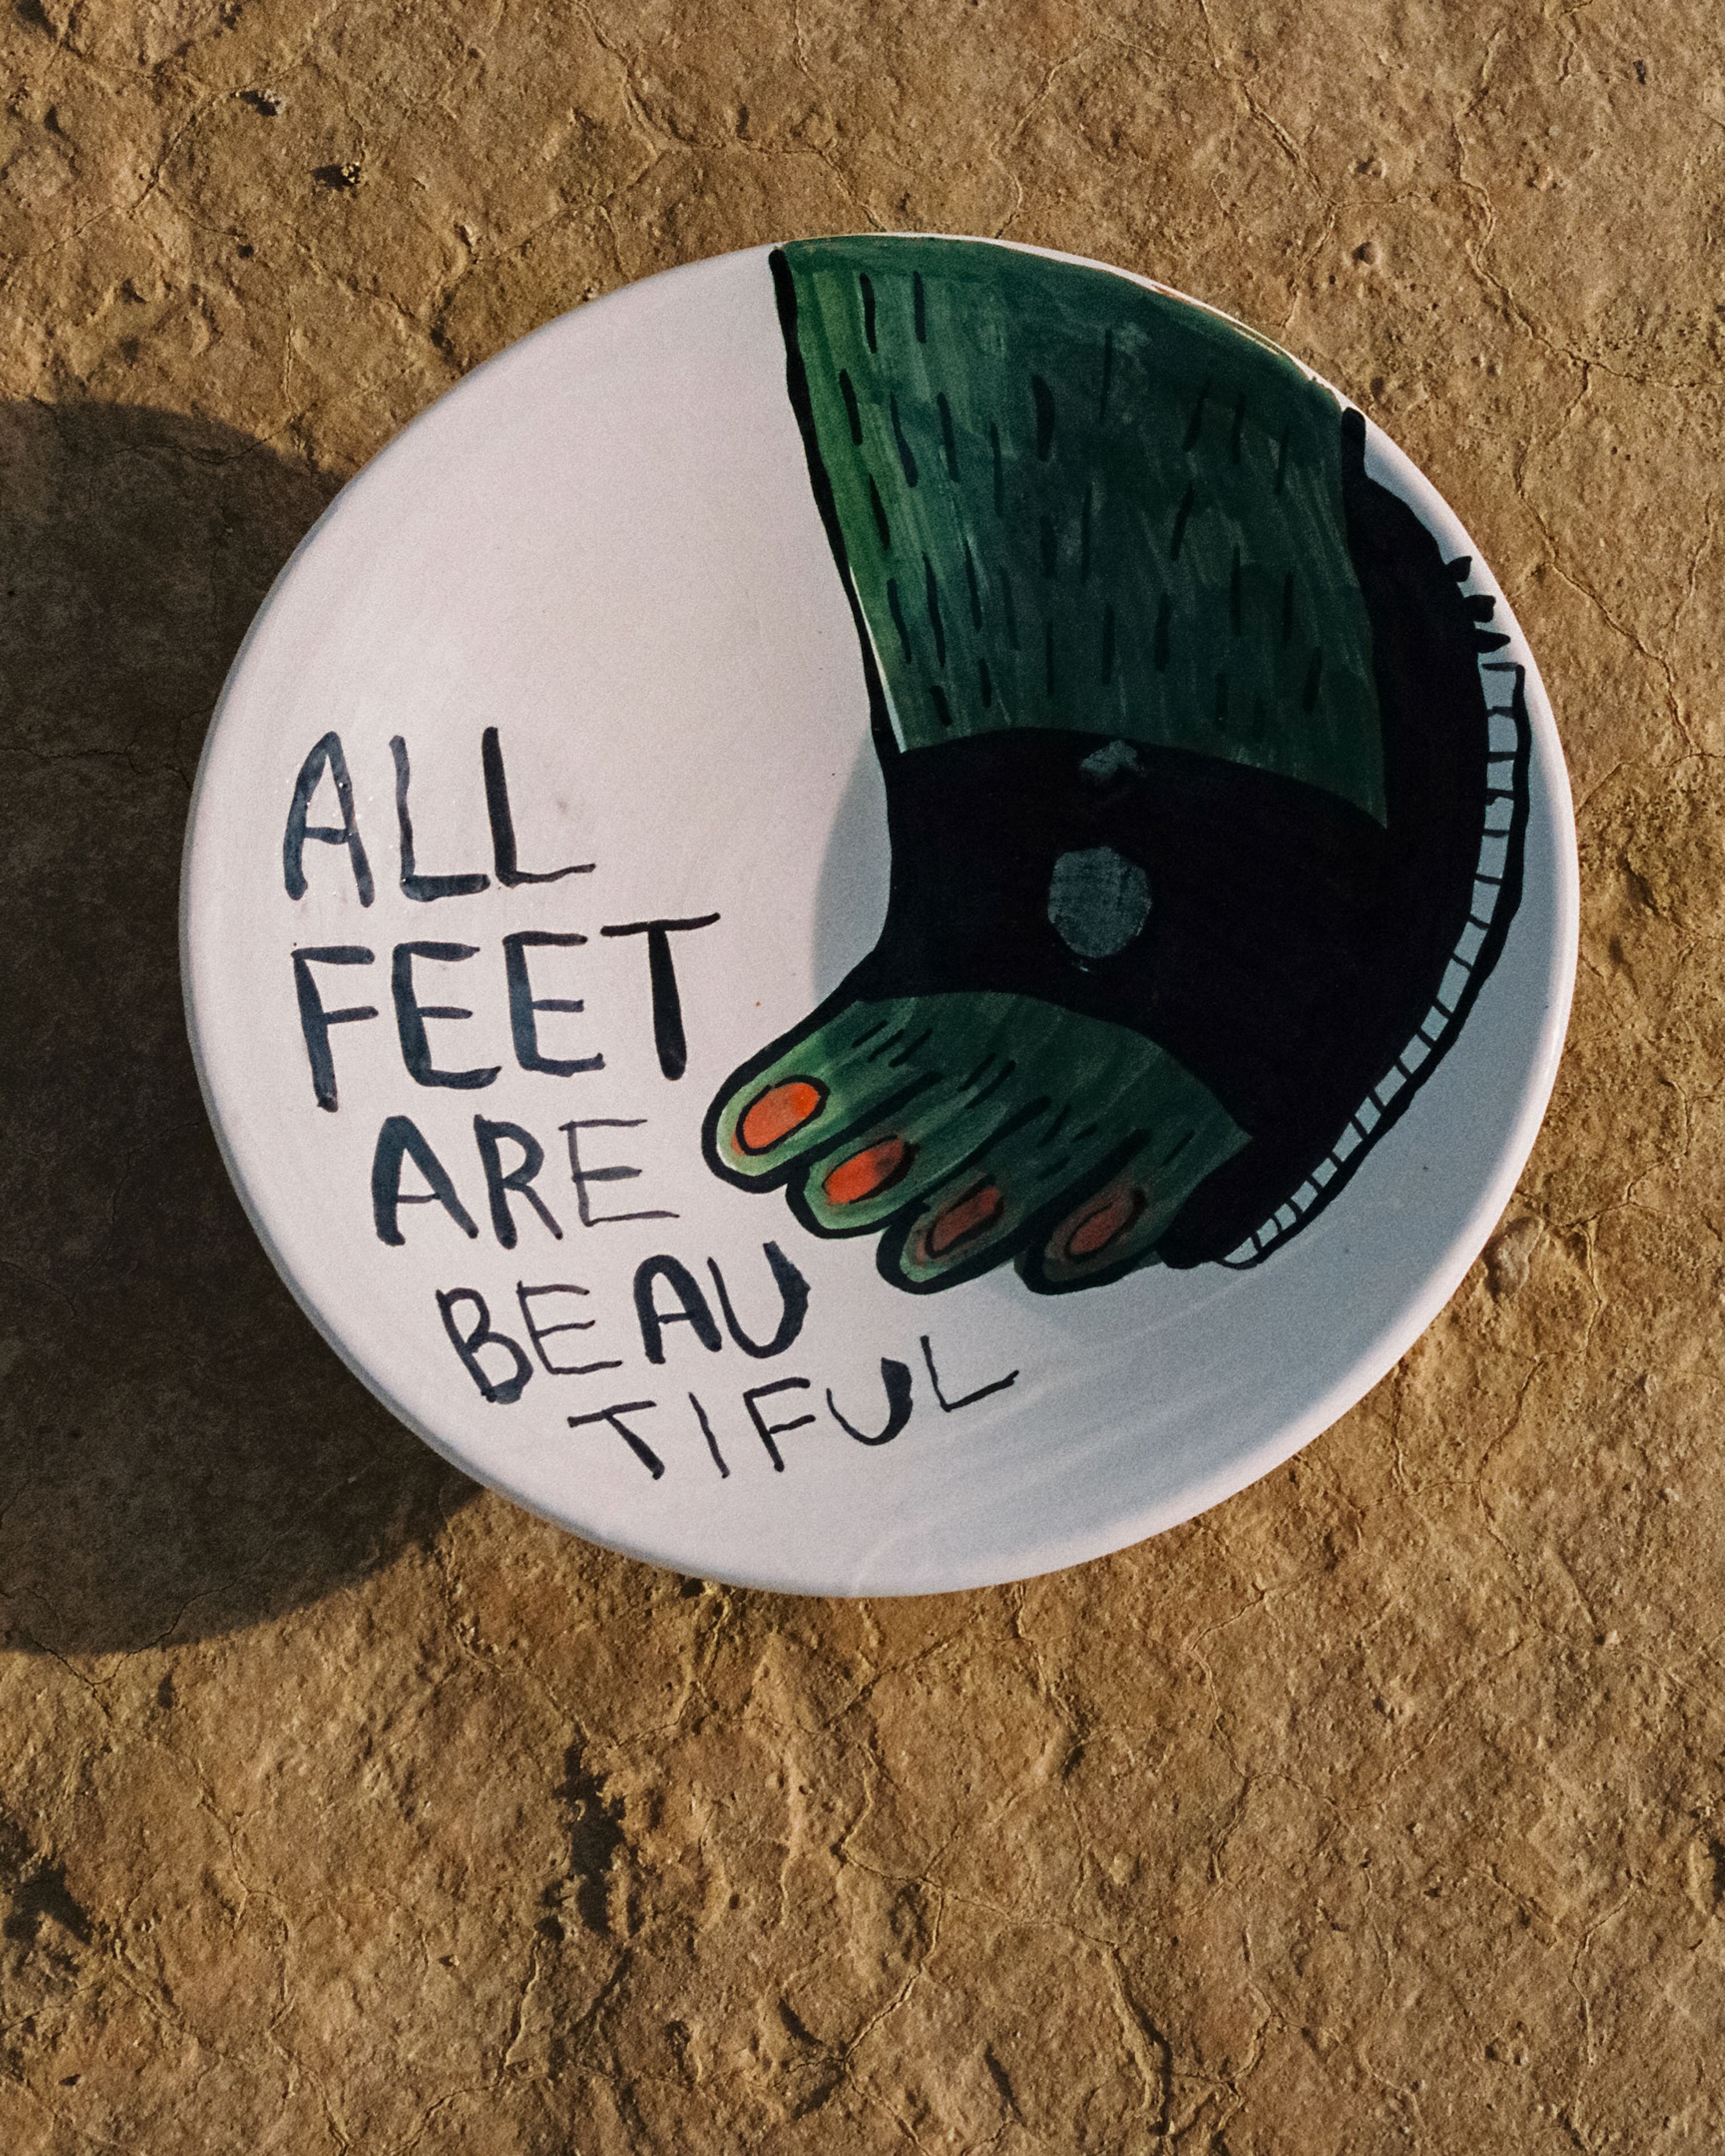 Fuente grande "All feet are beautiful"